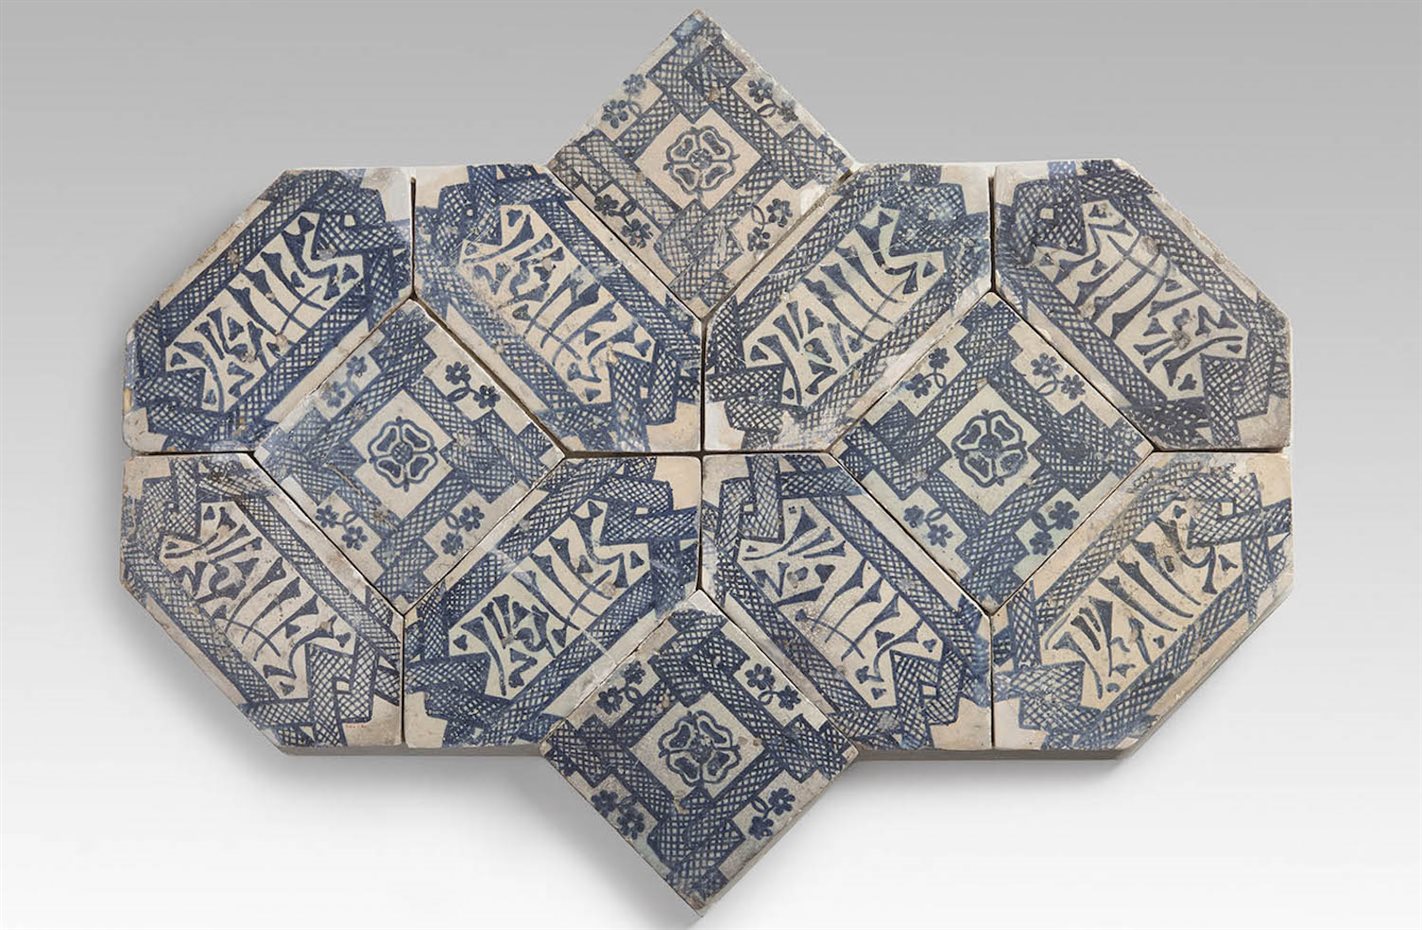 Loza de Manises (siglo XV) de estilo mudéjar procedente del pavimento de la cartuja de Montalegre, en Tiana (Barcelona). Exposición Museo del Disseny de Barcelona 